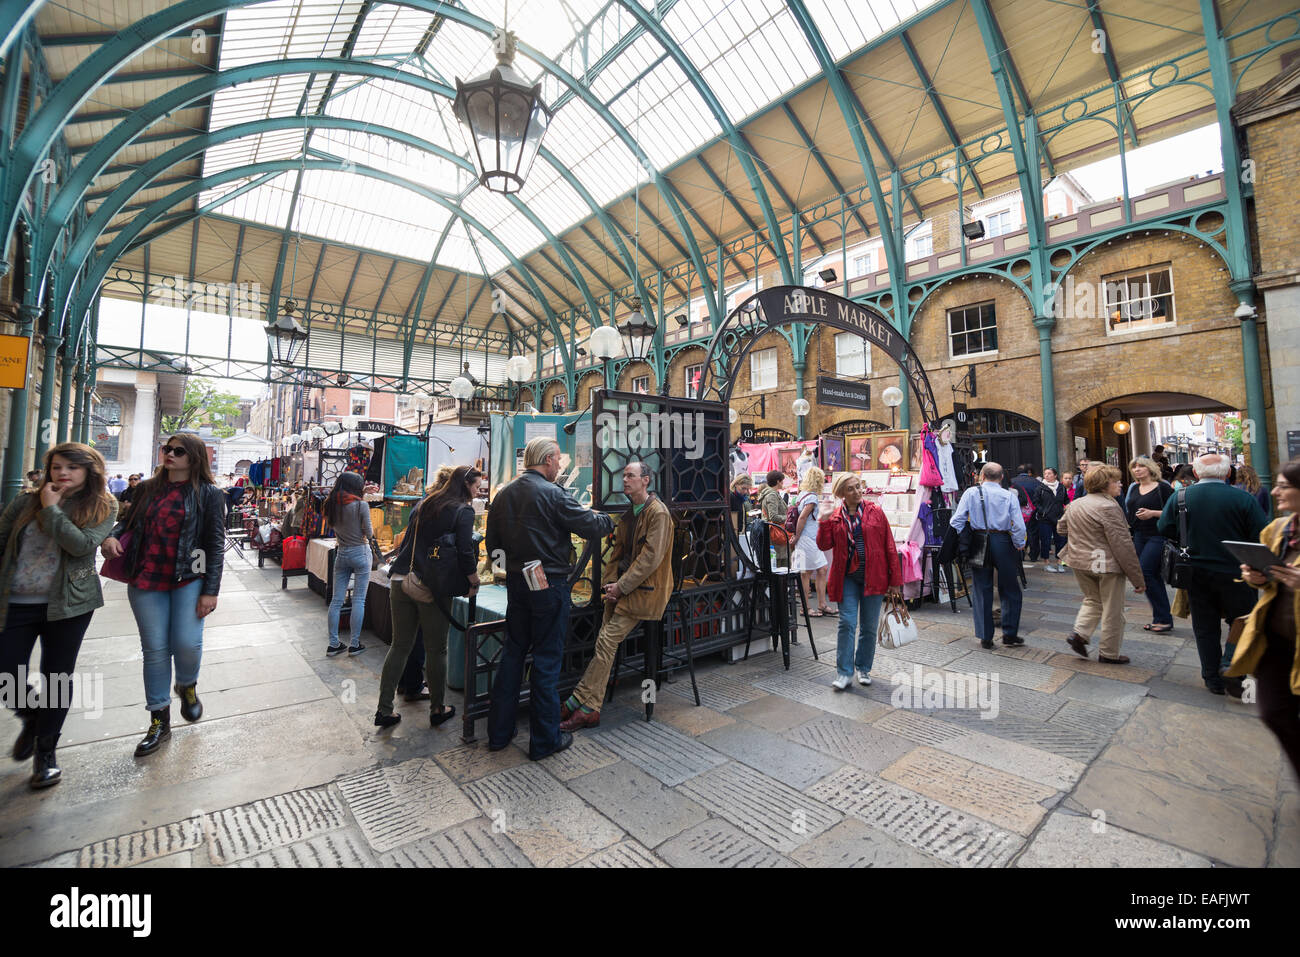 Londres, Royaume-Uni, le 5 juin 2014 : Apple Market, le marché néo-classique est au cœur de Covent Garden, de l'origine Banque D'Images